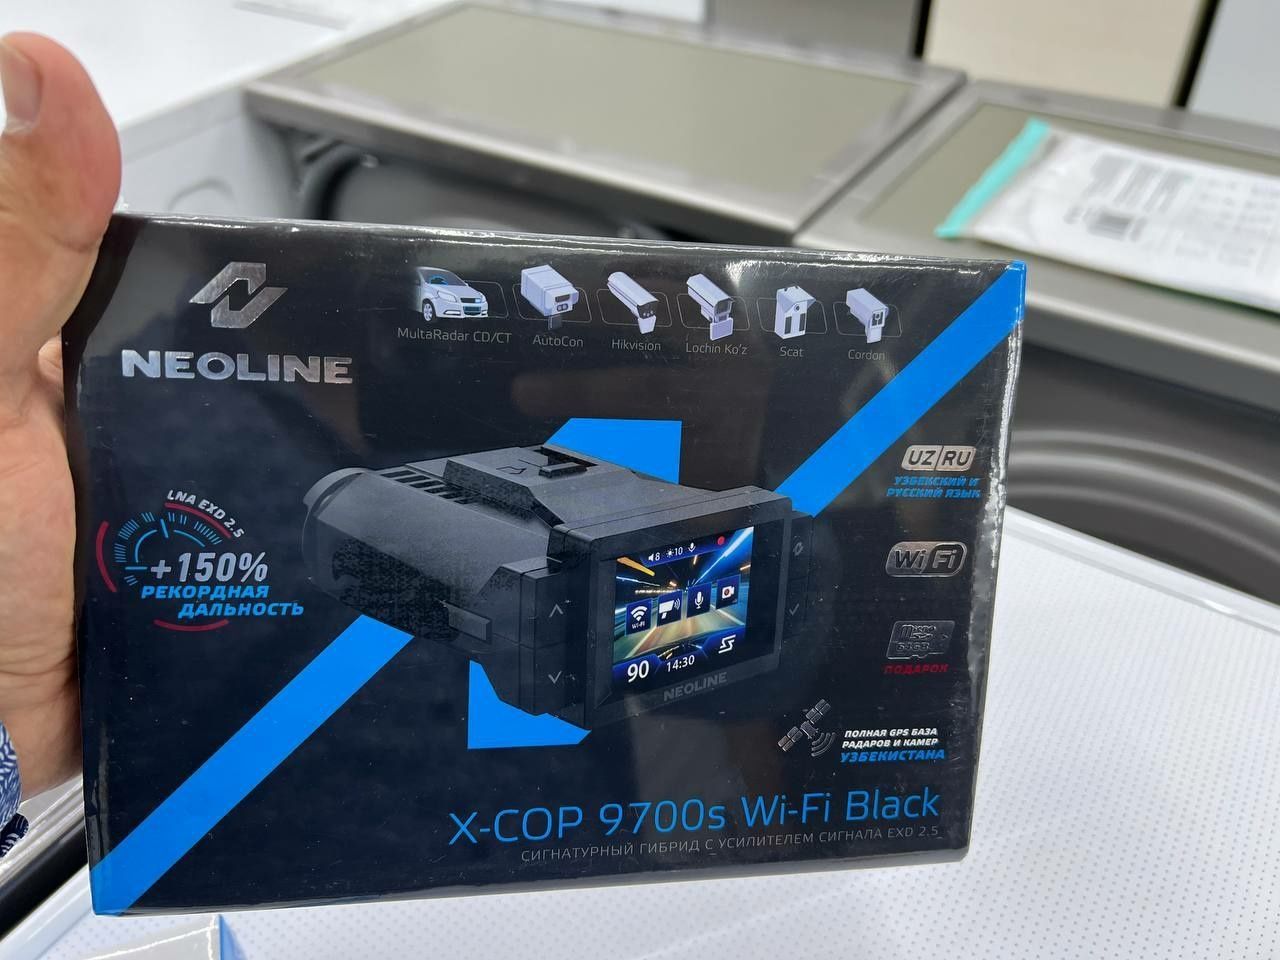 Neoline x-cop 9700s Wi-Fi Black